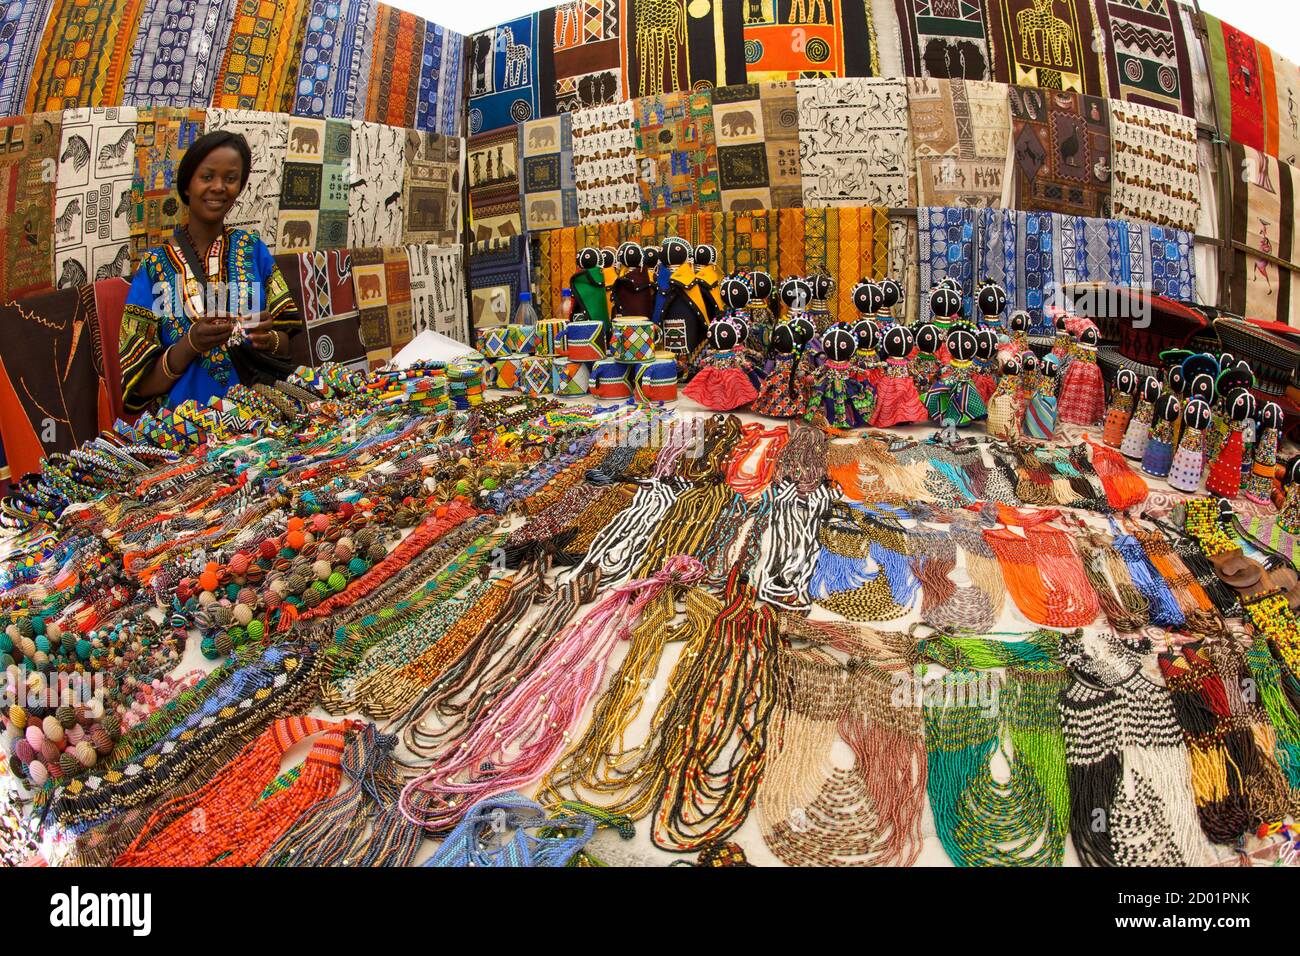 Afrikanische Dame in traditionellem Outfit verkauft Kuriositäten auf einem Markt in Kapstadt, Südafrika. Stockfoto